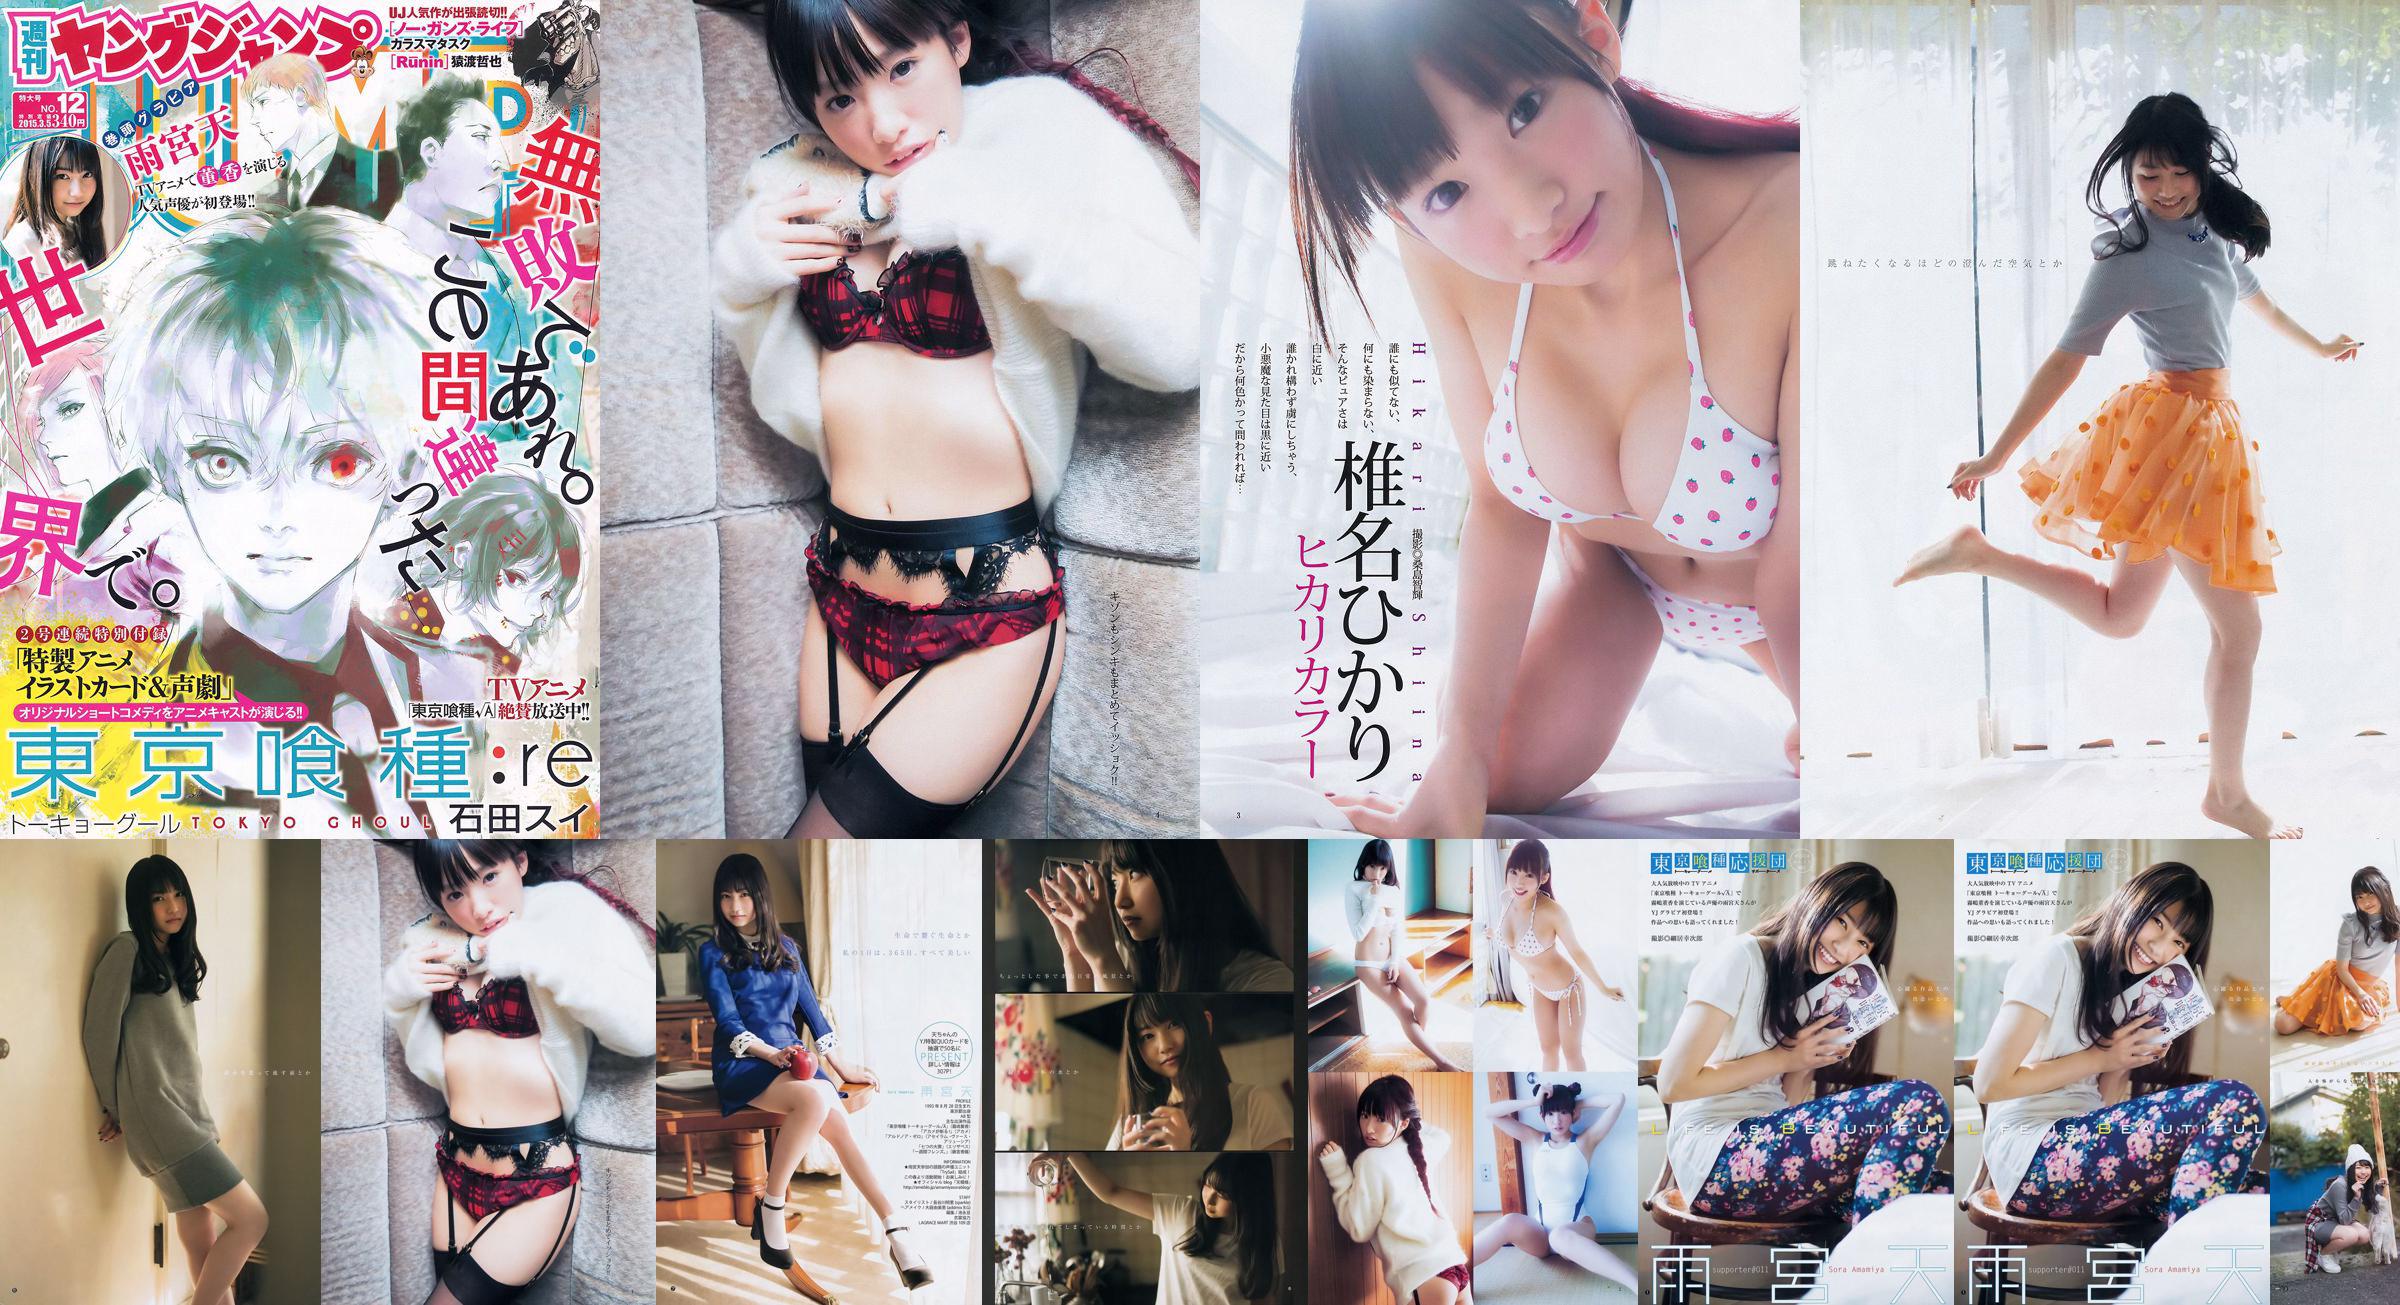 Amamiya Tian Shiina ひかり [Weekly Young Jump] 2015 No.12 Photo Magazine No.b9bd62 Pagina 4